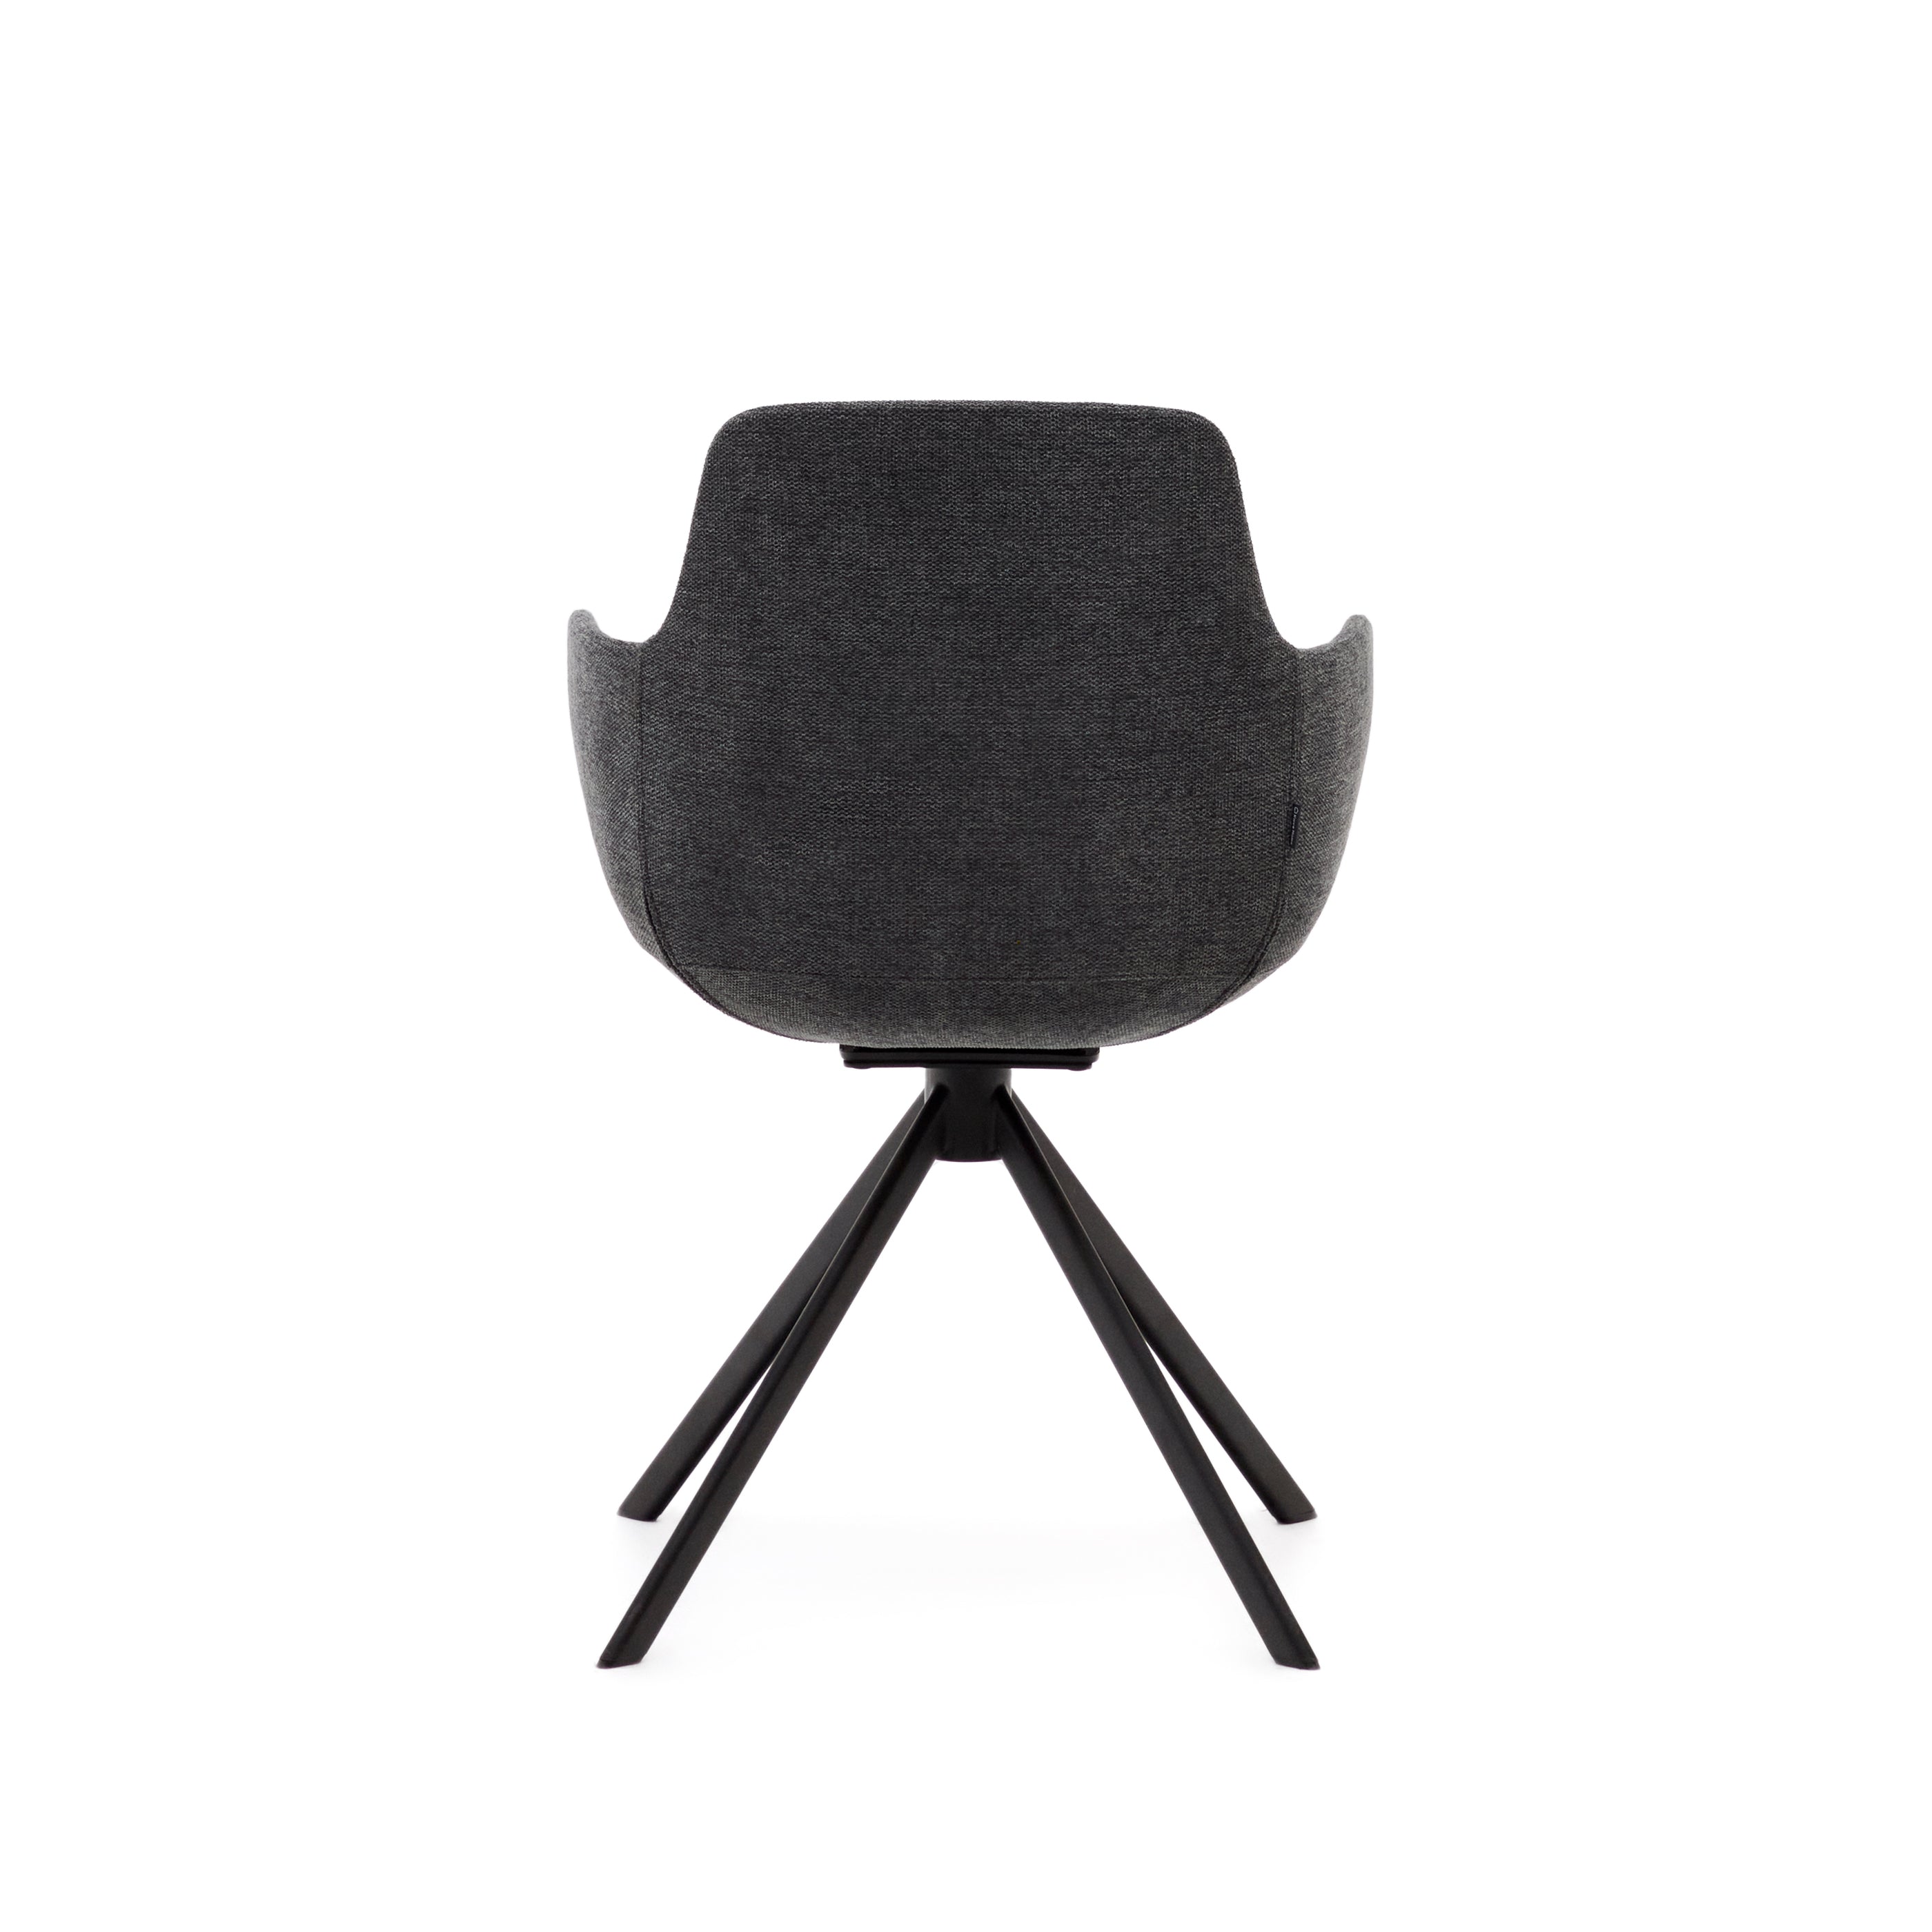 Tissiana self-centring swivel chair in dark grey chenille and matte black aluminium